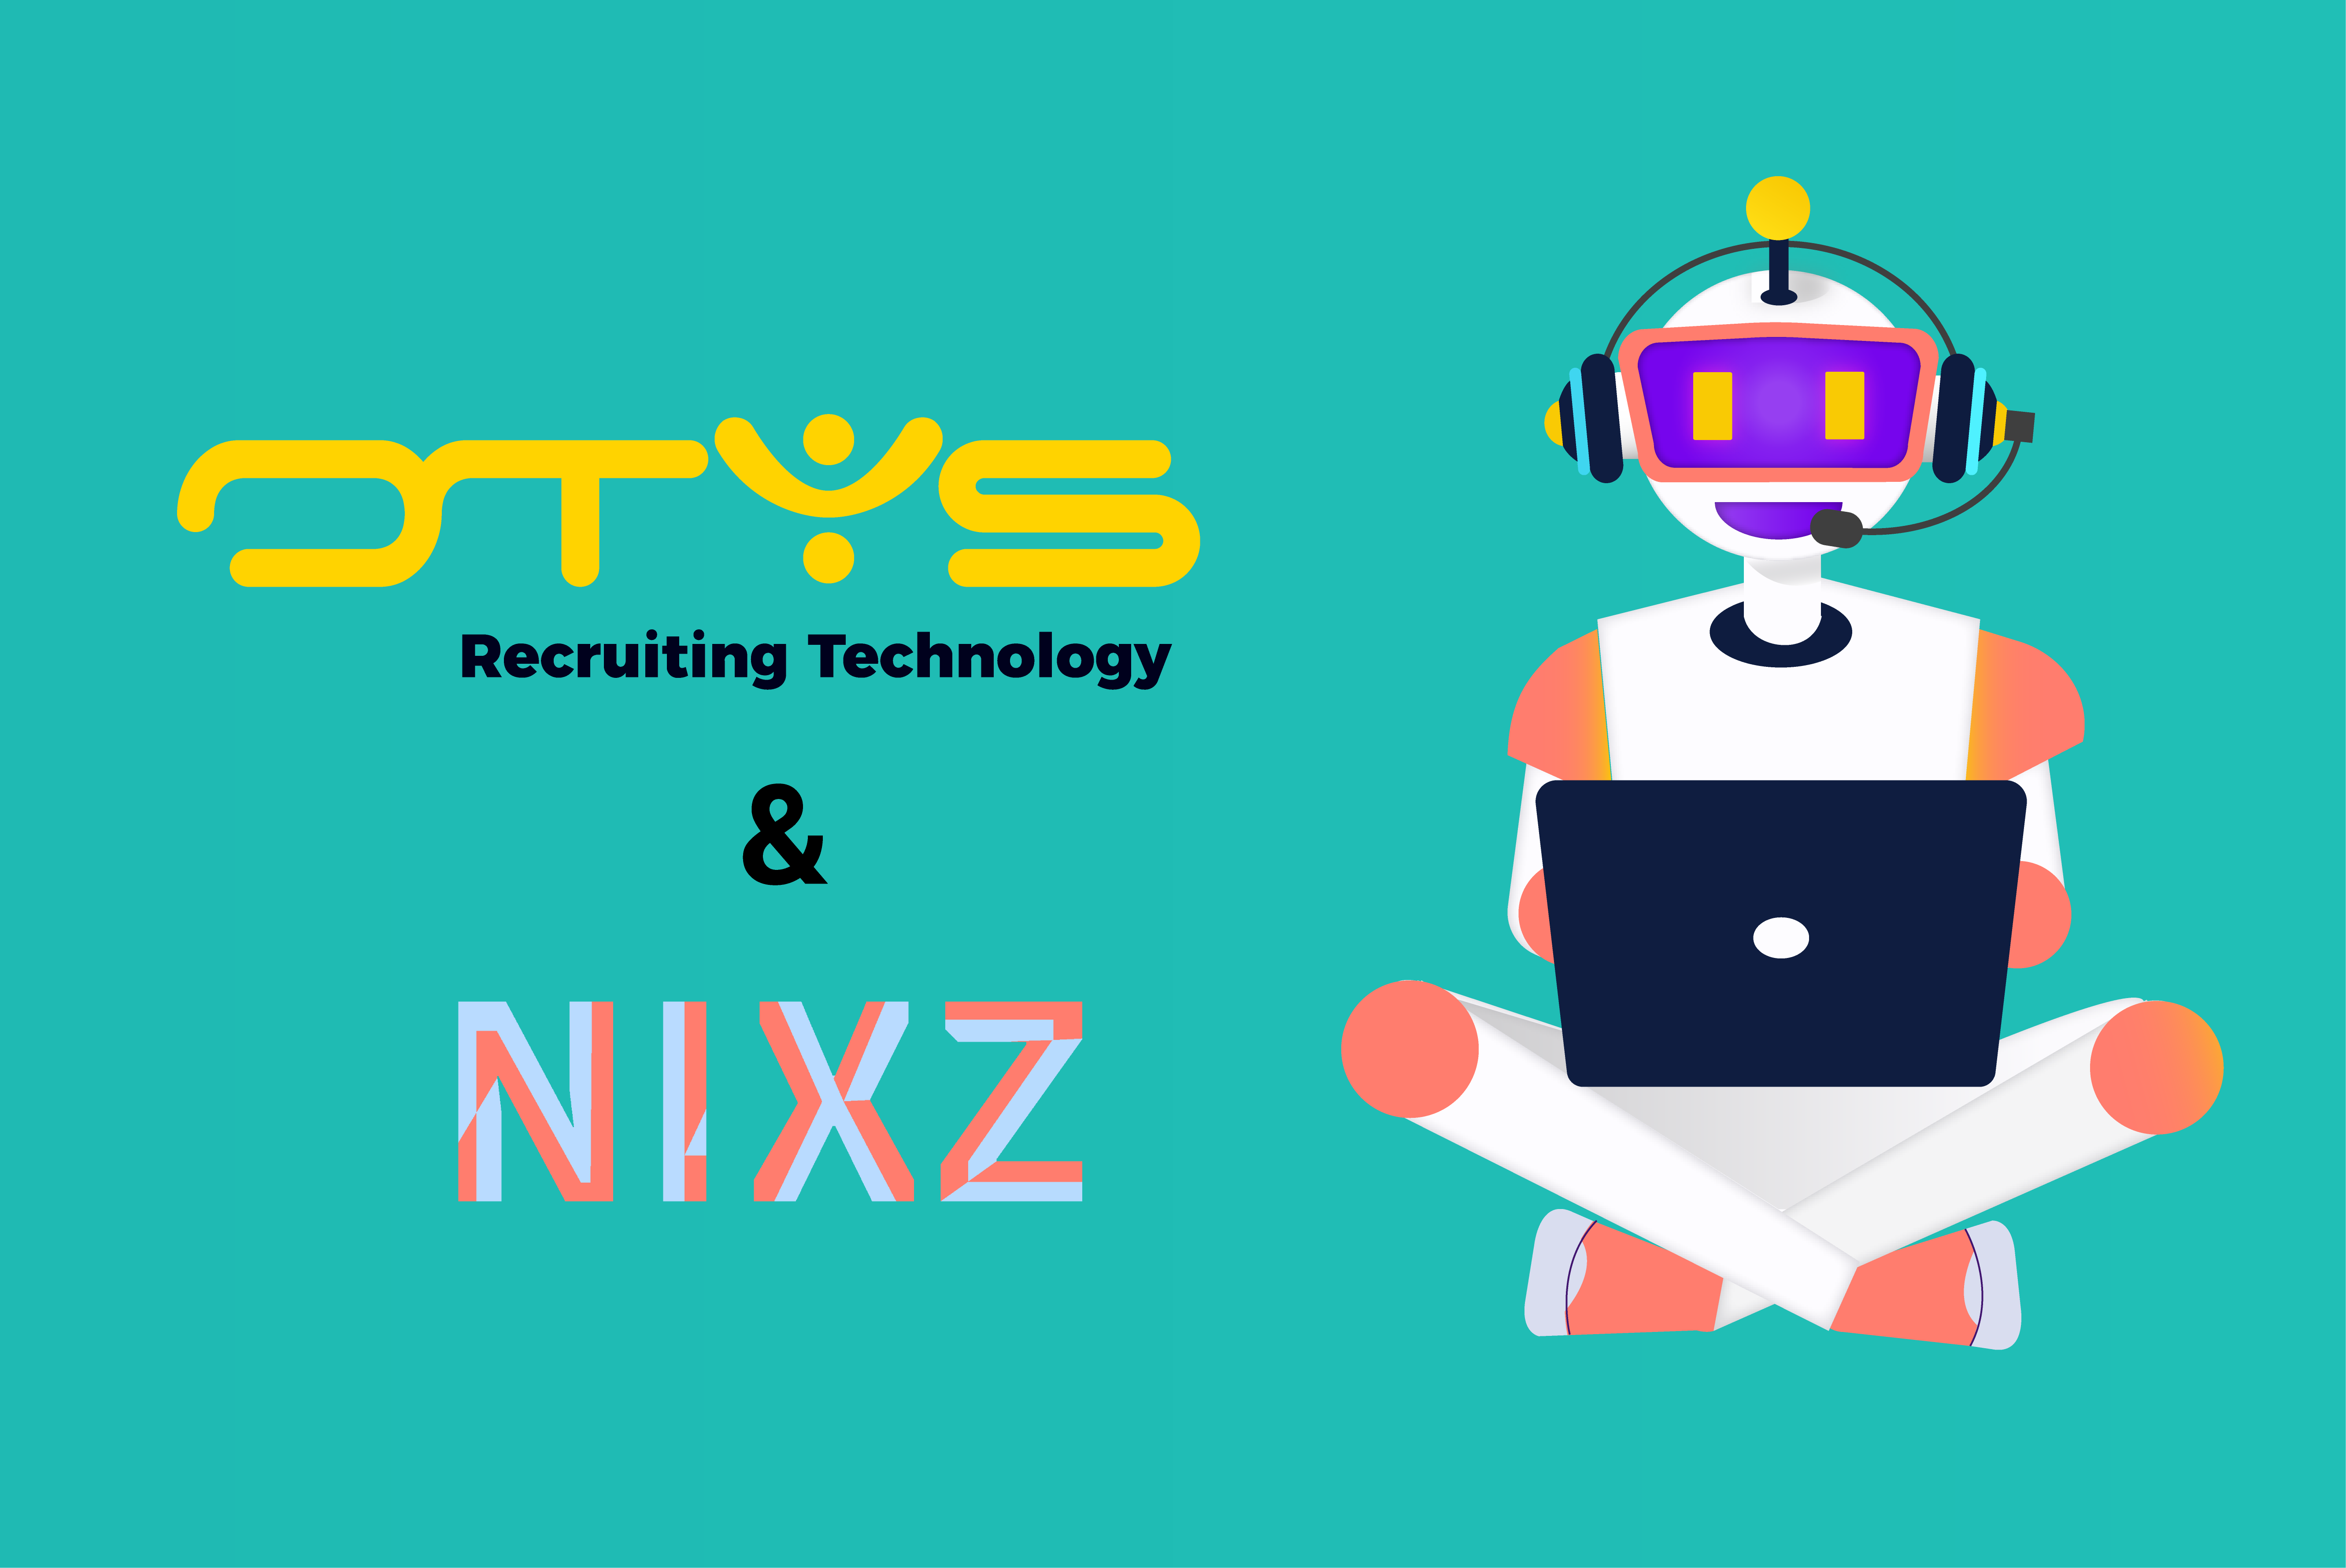 De OTYS integratie van NIXZ